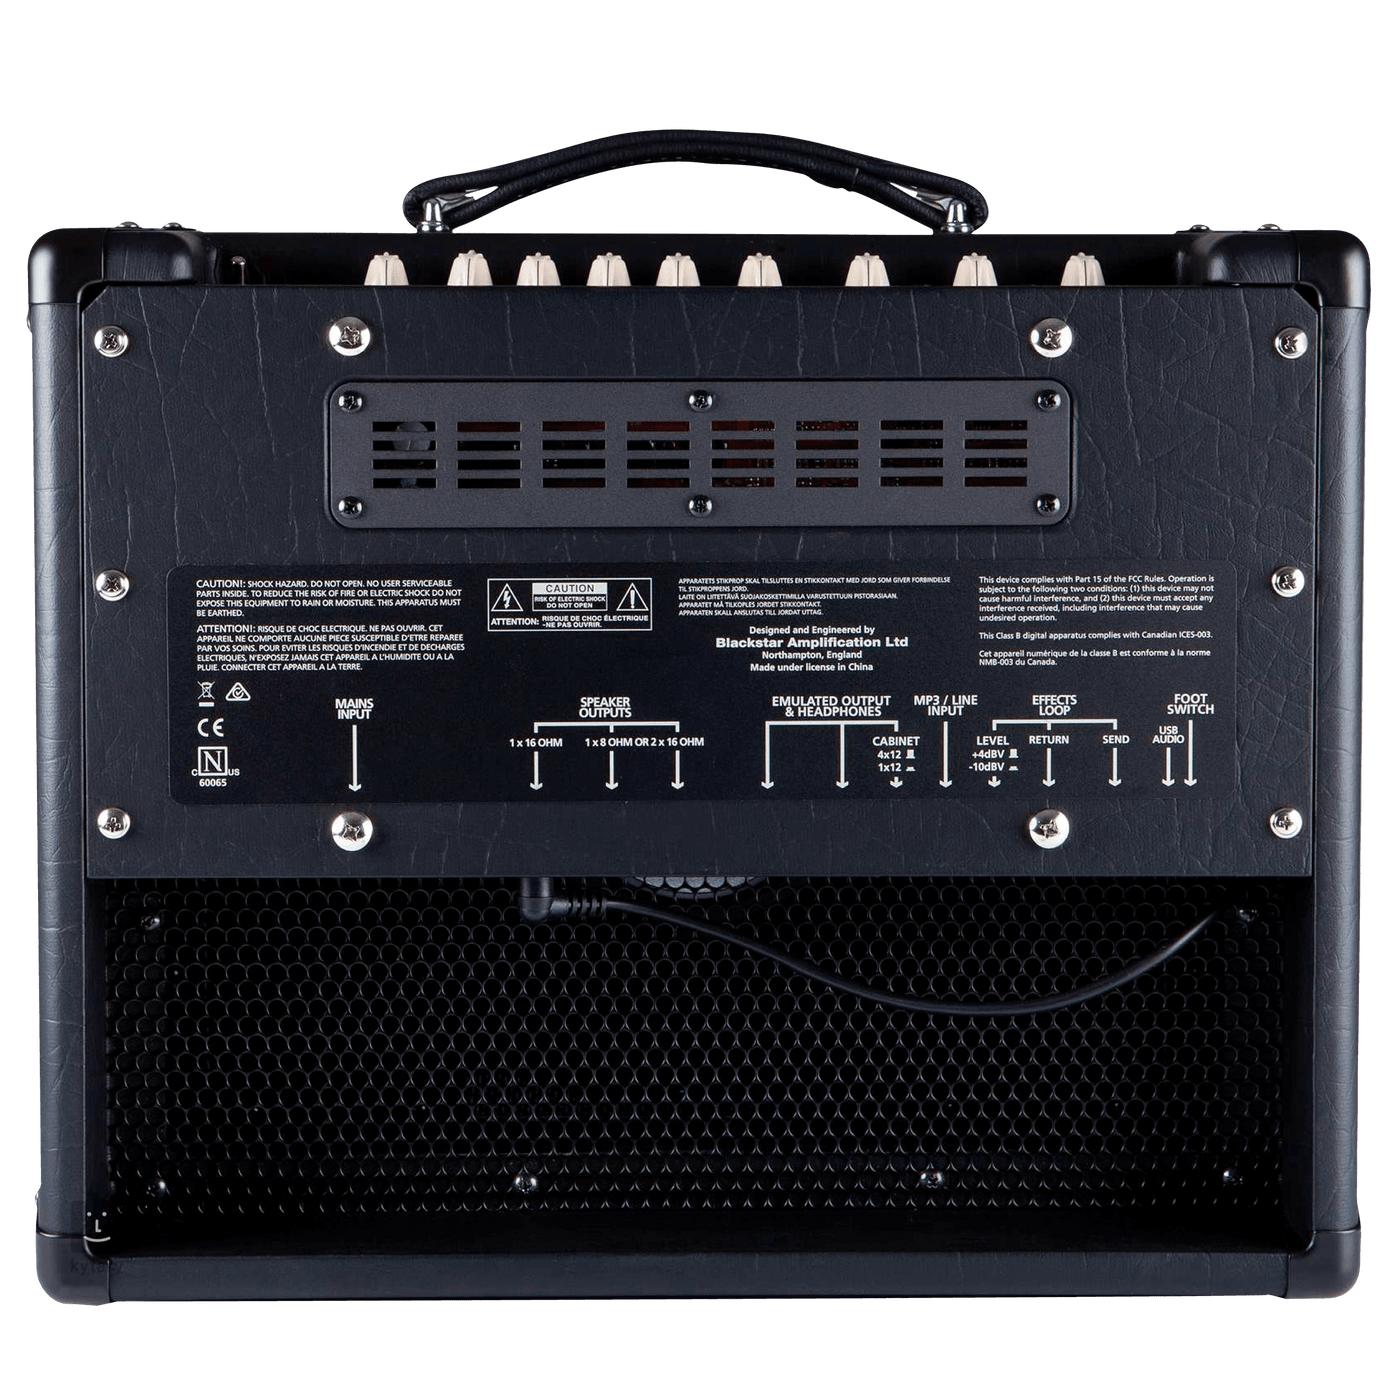 Blackstar HT-5R MkII - $829990 - Gearhub - El HT-5R MkII es uno de los mejores amplificadores de válvulas para estudio y práctica. .El interruptor de reducción de potencia lo lleva a 0.5 watts sin comprometer el tono: perfecto para conducir la etapa de potencia de la válvula en casa o en el estudio. Nuestro circuito ISF patentado le brinda un ajuste infinito sobre las características de la red de control de tono y lo lleva desde los EE. UU. Al Reino Unido y a cualquier punto intermedio. Así que ahora puede